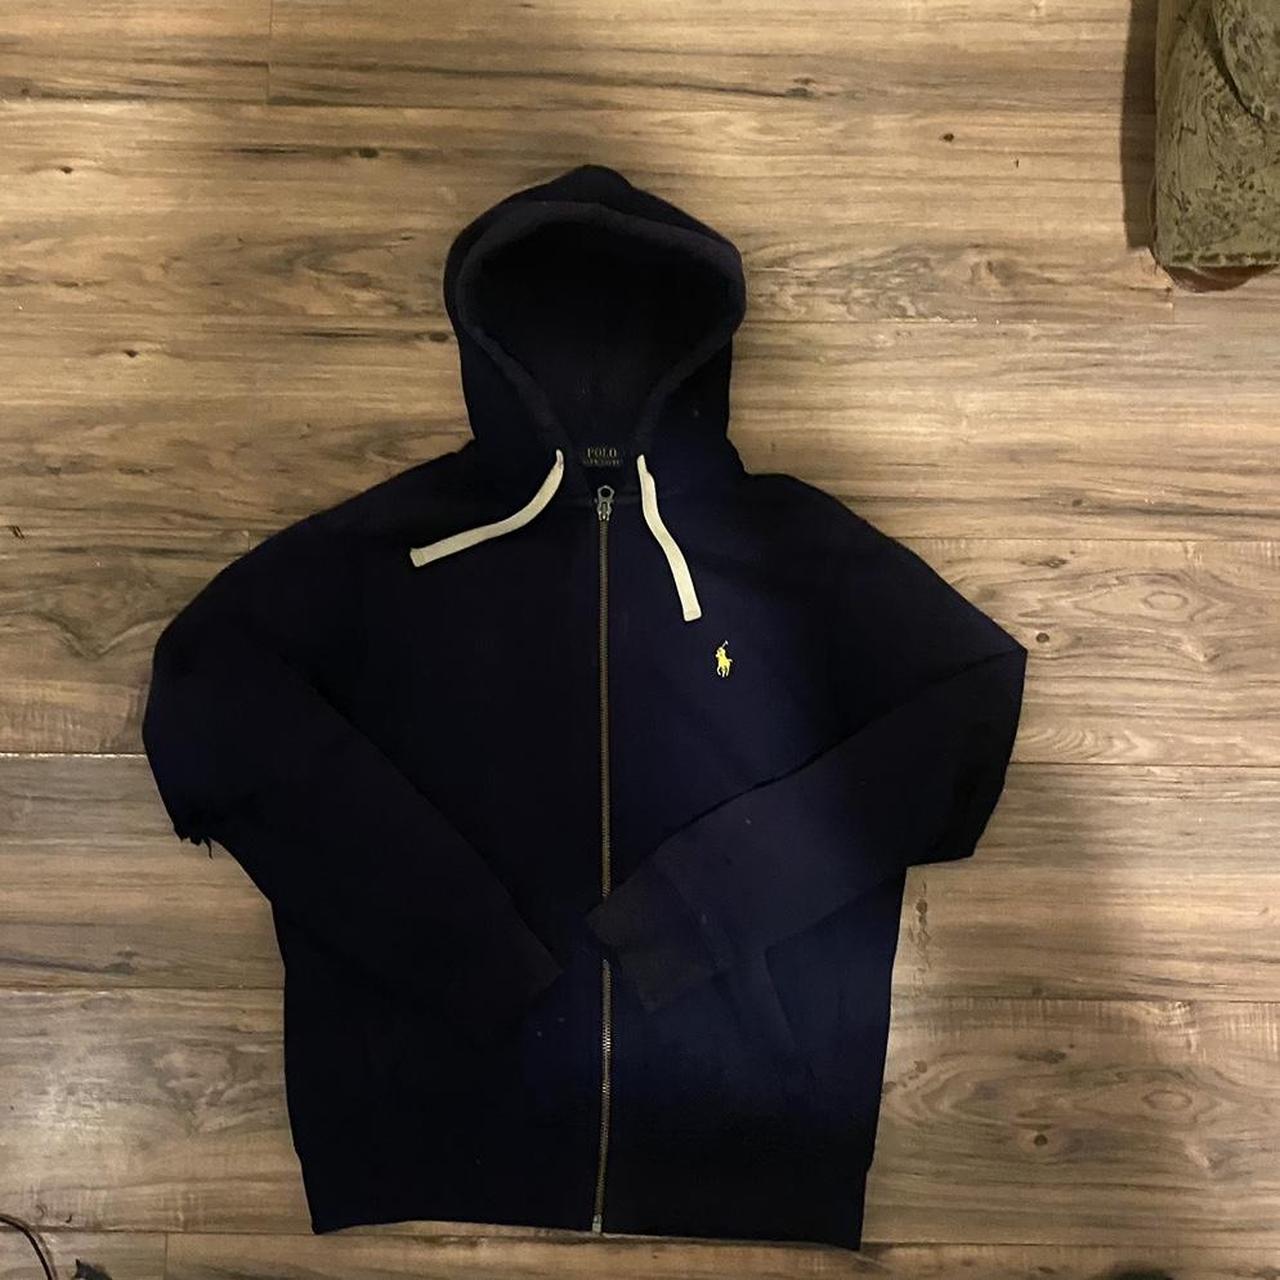 Distressed large polo zip up hoodie - Depop